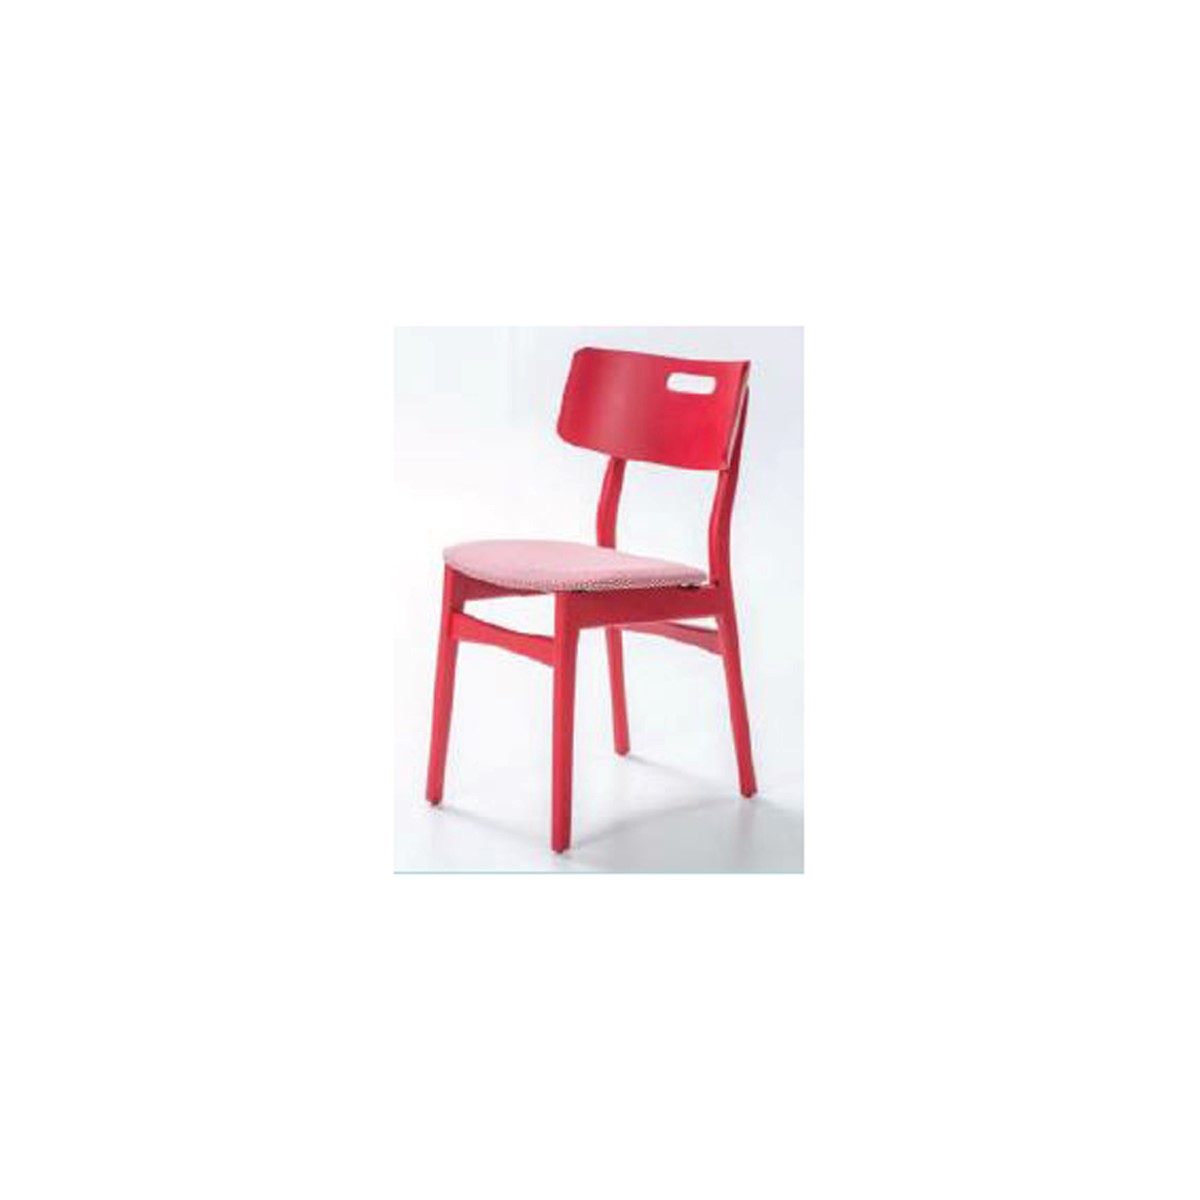 Pi Mutfak Sandalyesi -  Kırmızı Renkli Gövde